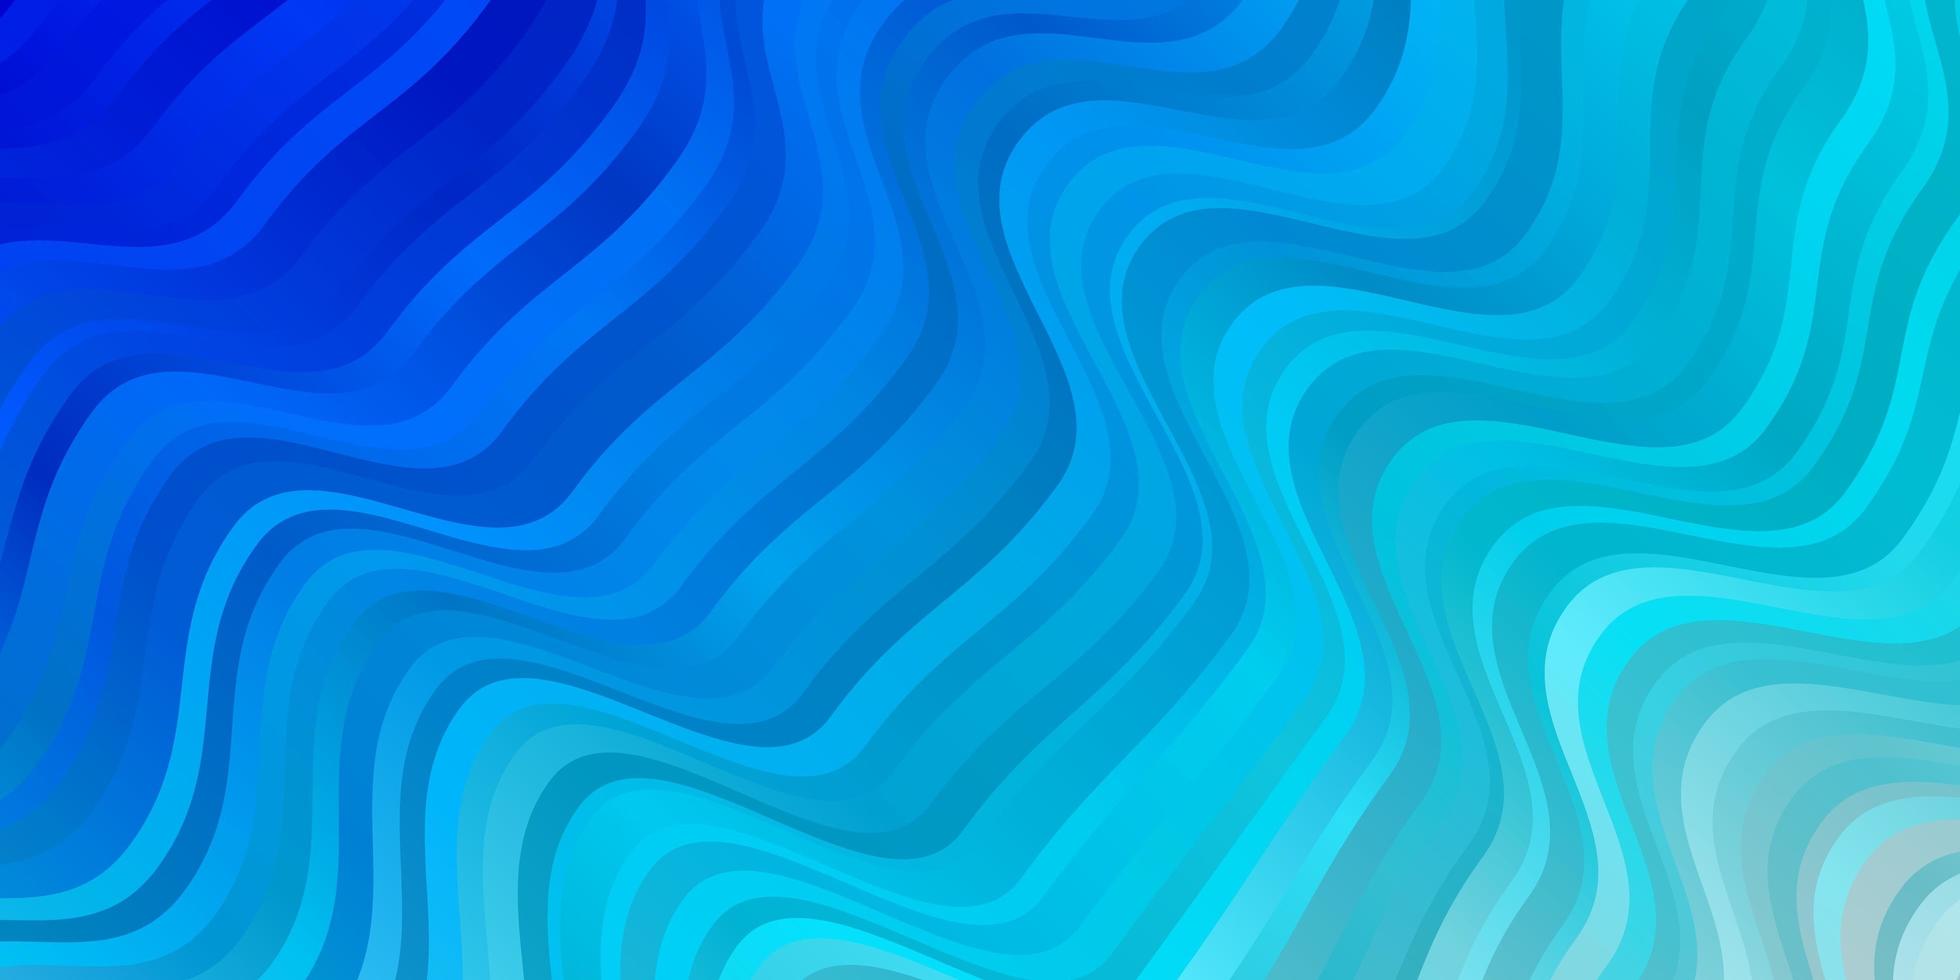 ljusblå vektormönster med sneda linjer. illustration i abstrakt stil med krökt lutning. mall för din ui-design. vektor